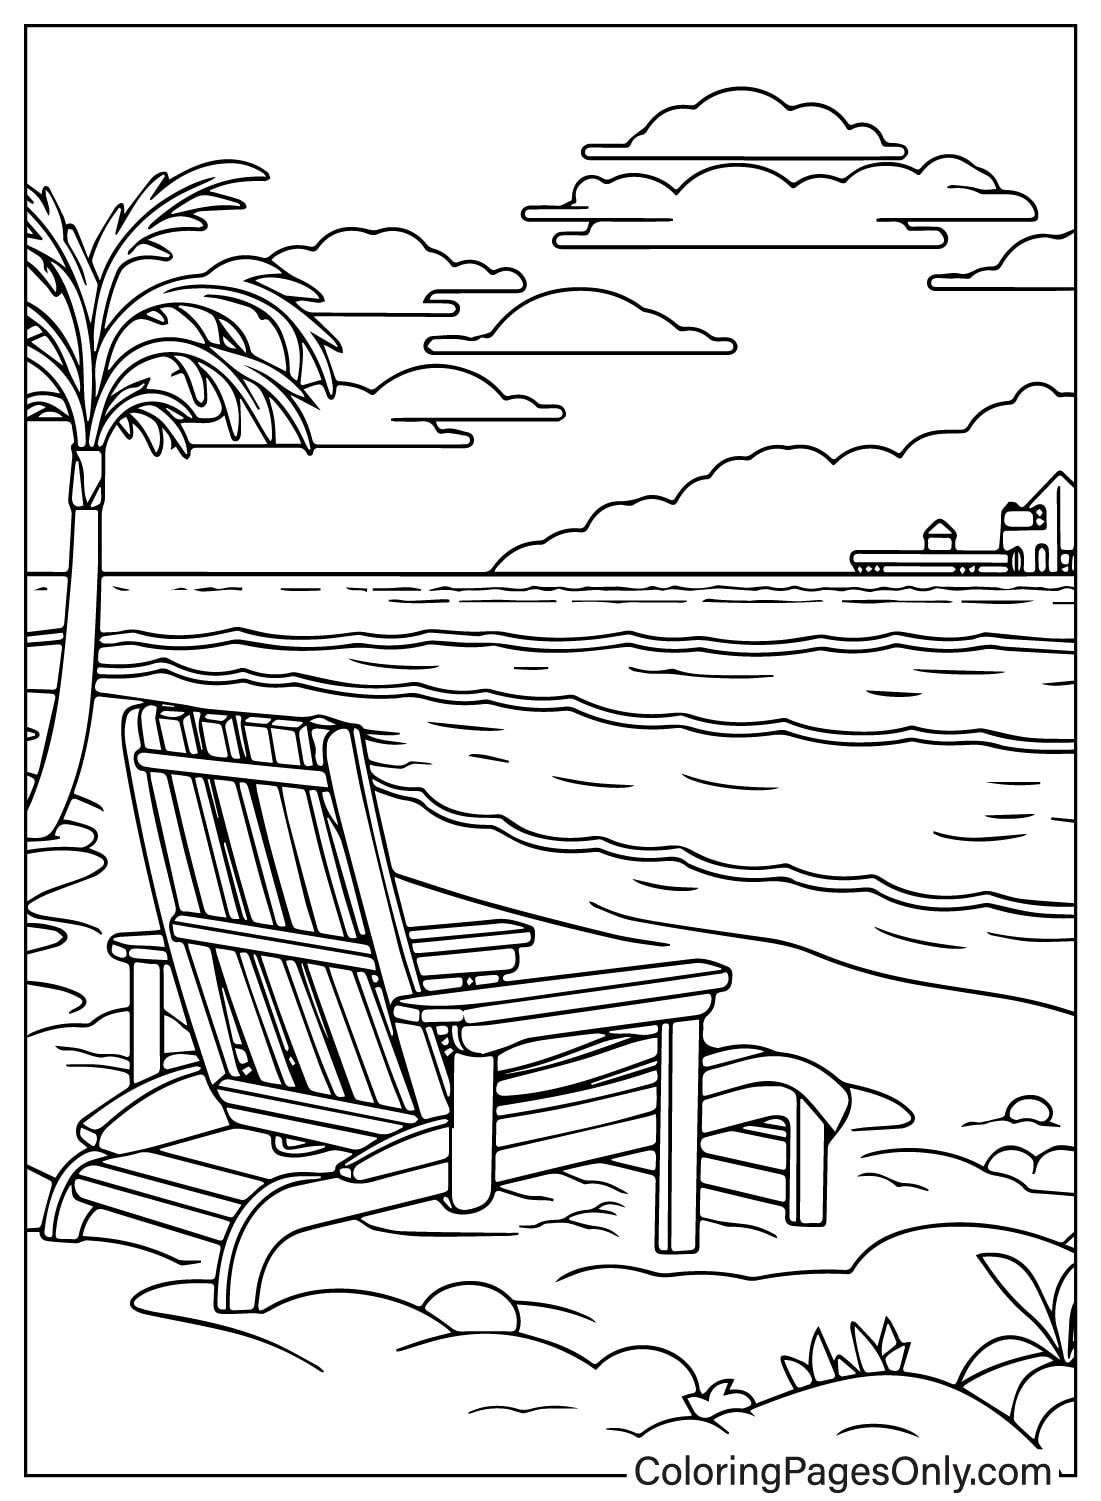 رسم توضيحي للشاطئ